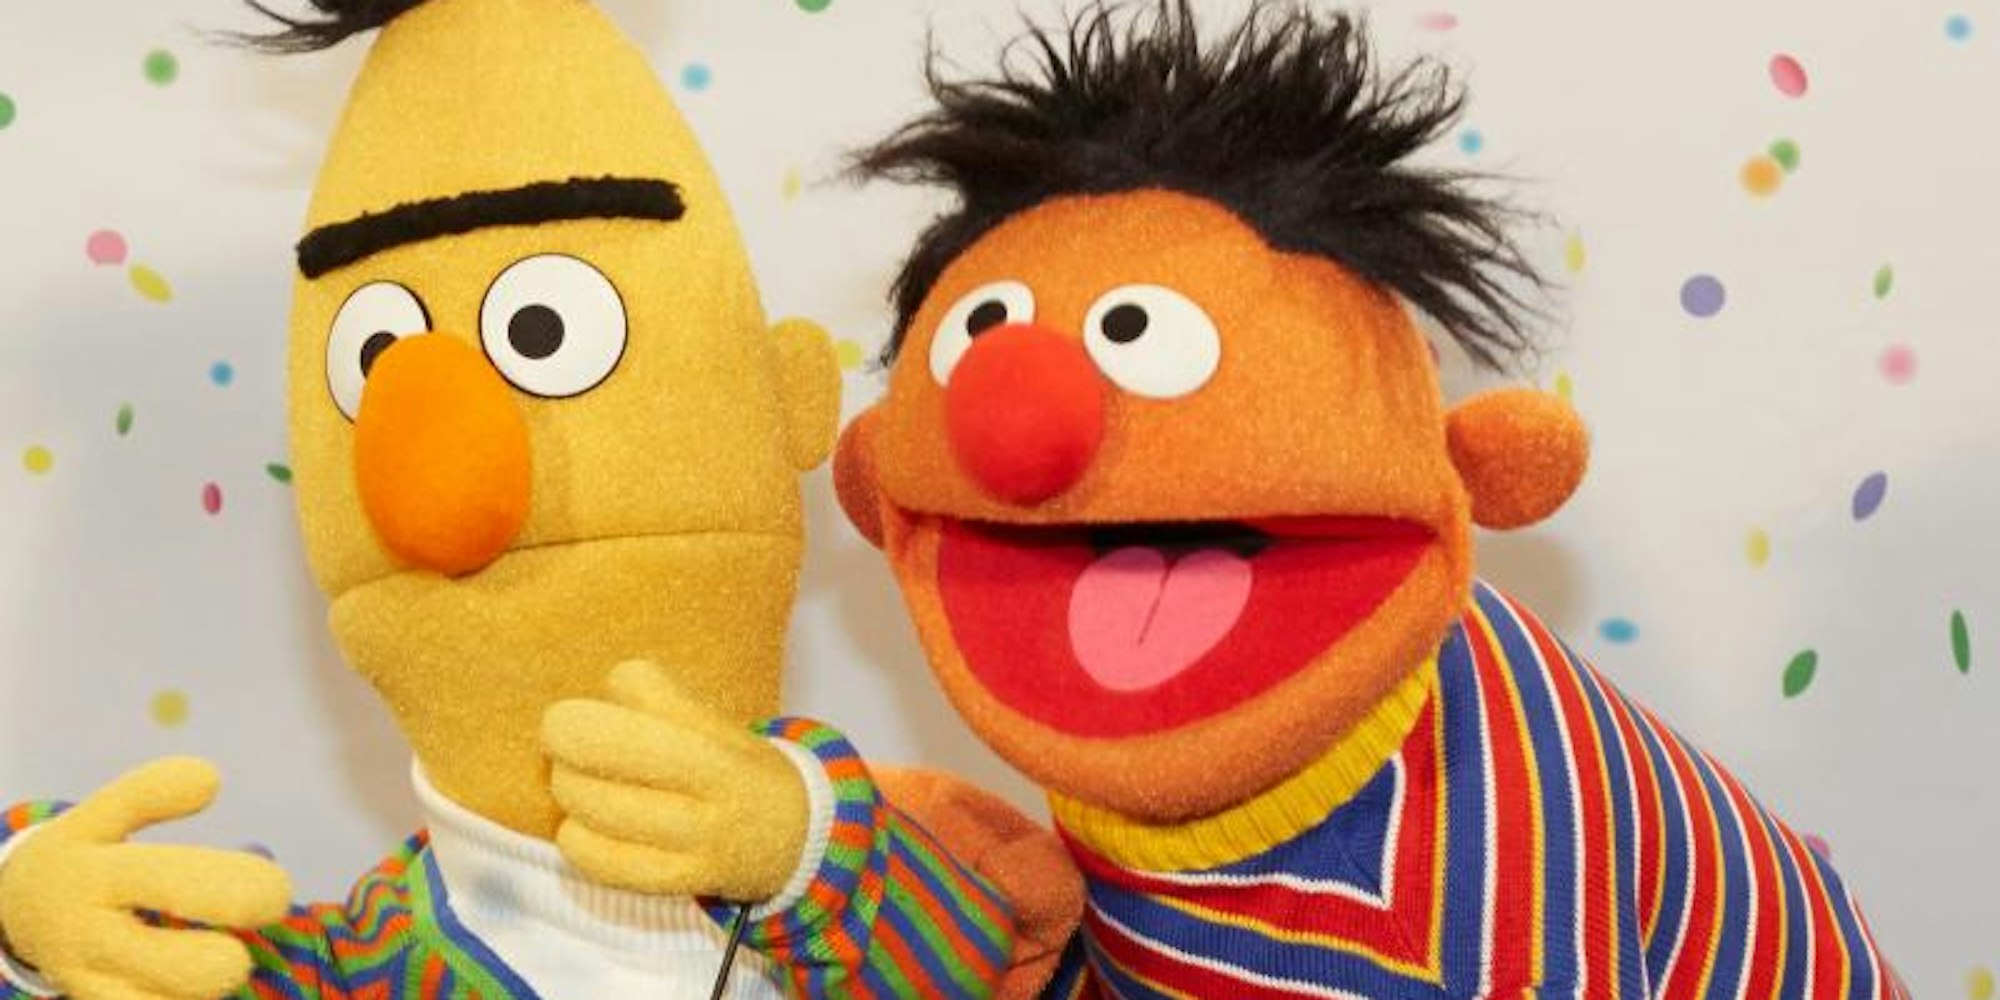 Die beiden Figuren Ernie (r) und Bert posieren bei einem NDR-Pressetermin.